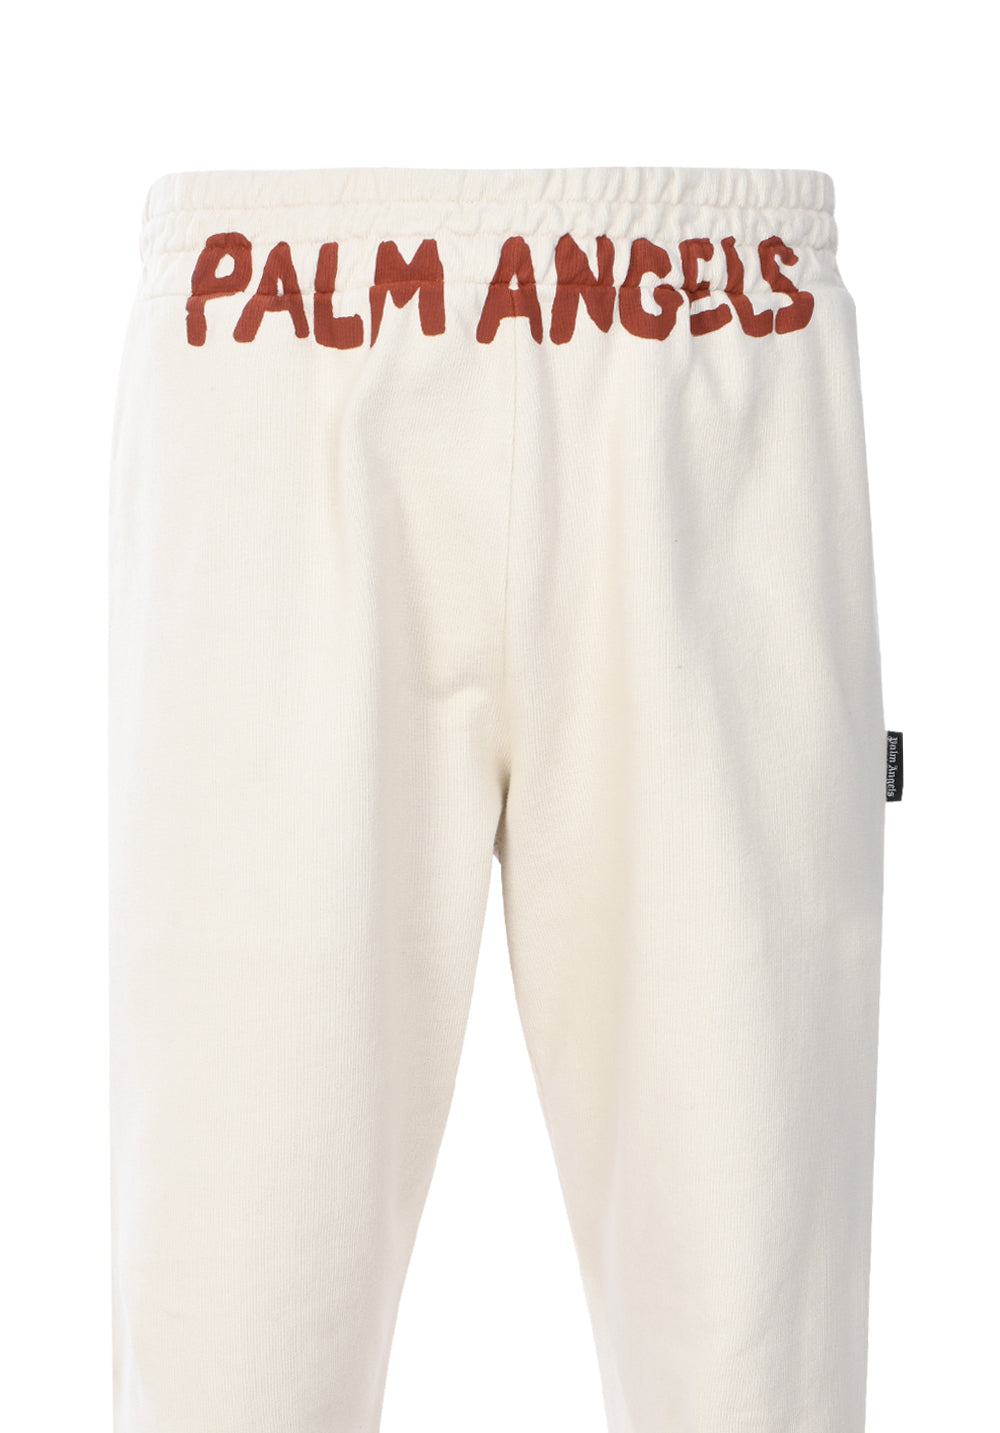 Palm Angels logo print elastic waist track pants